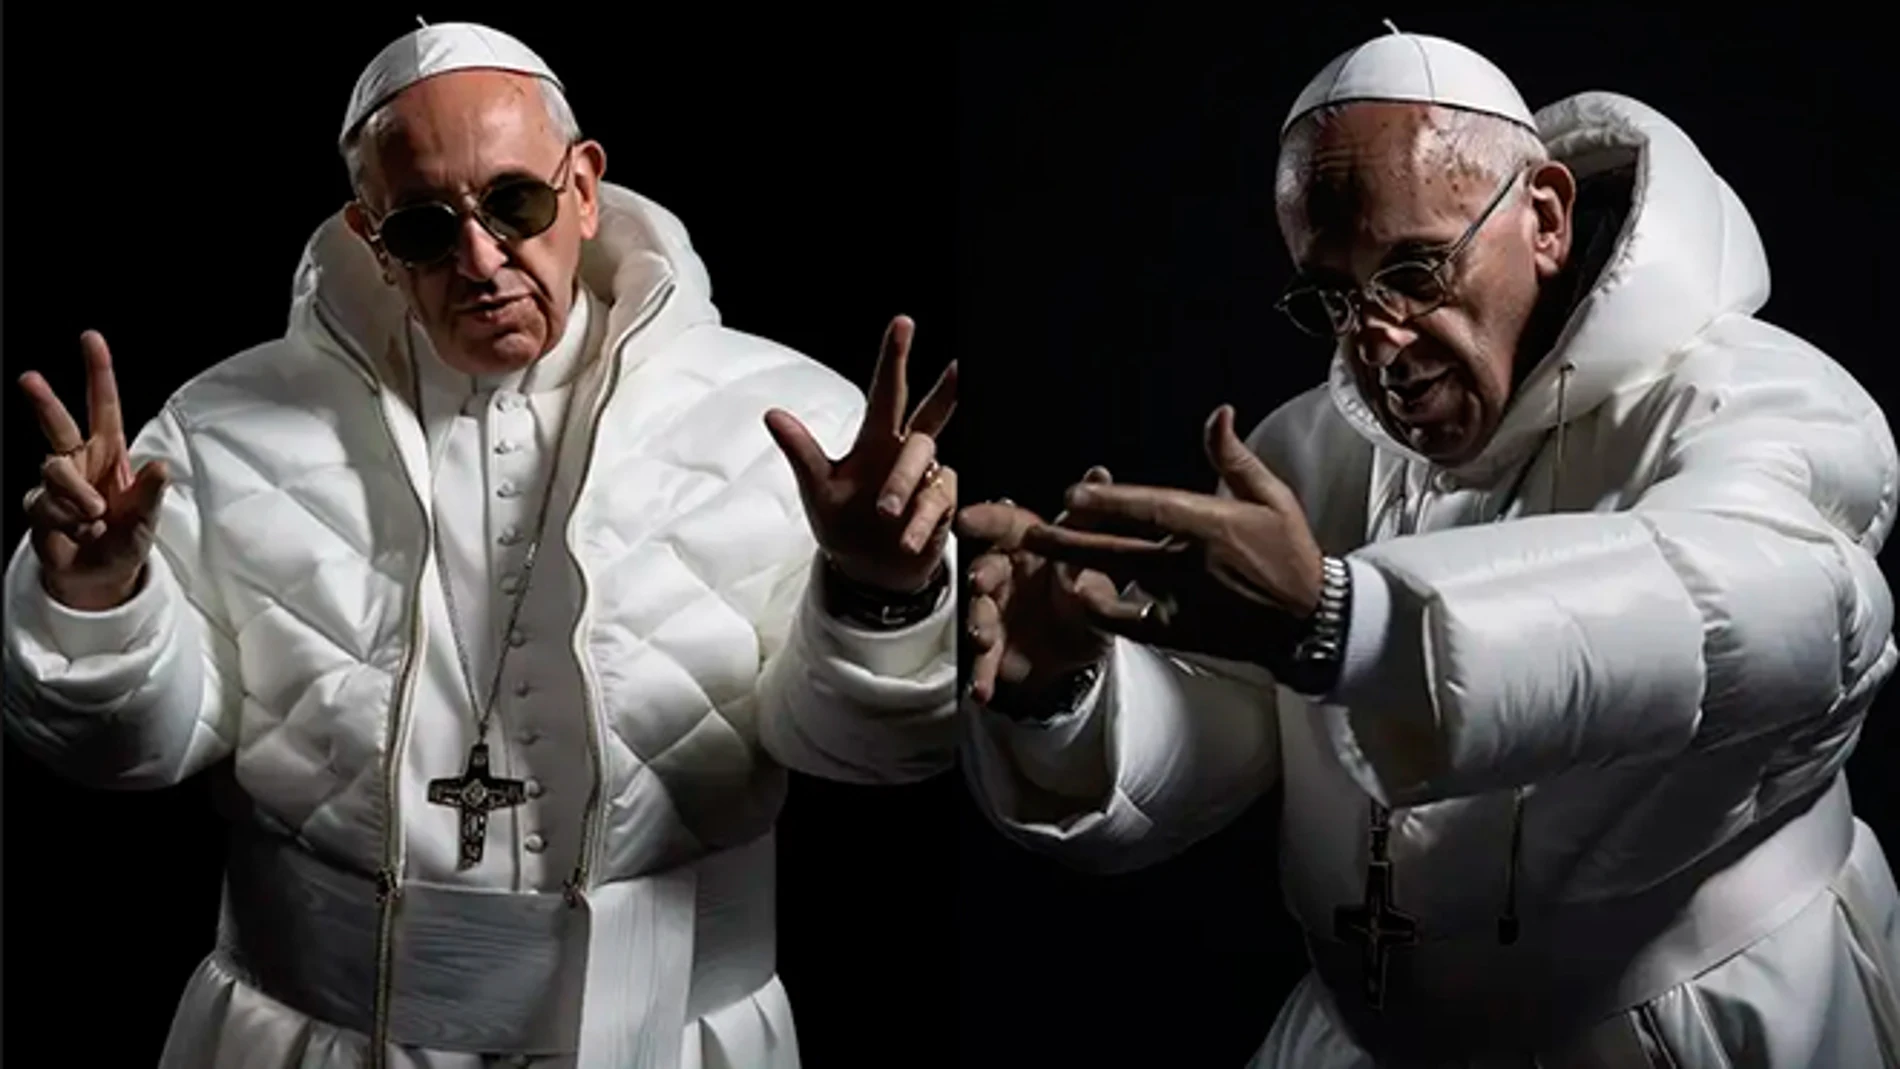 El Papa Francisco recreado por la inteligencia artificial Midjourney.